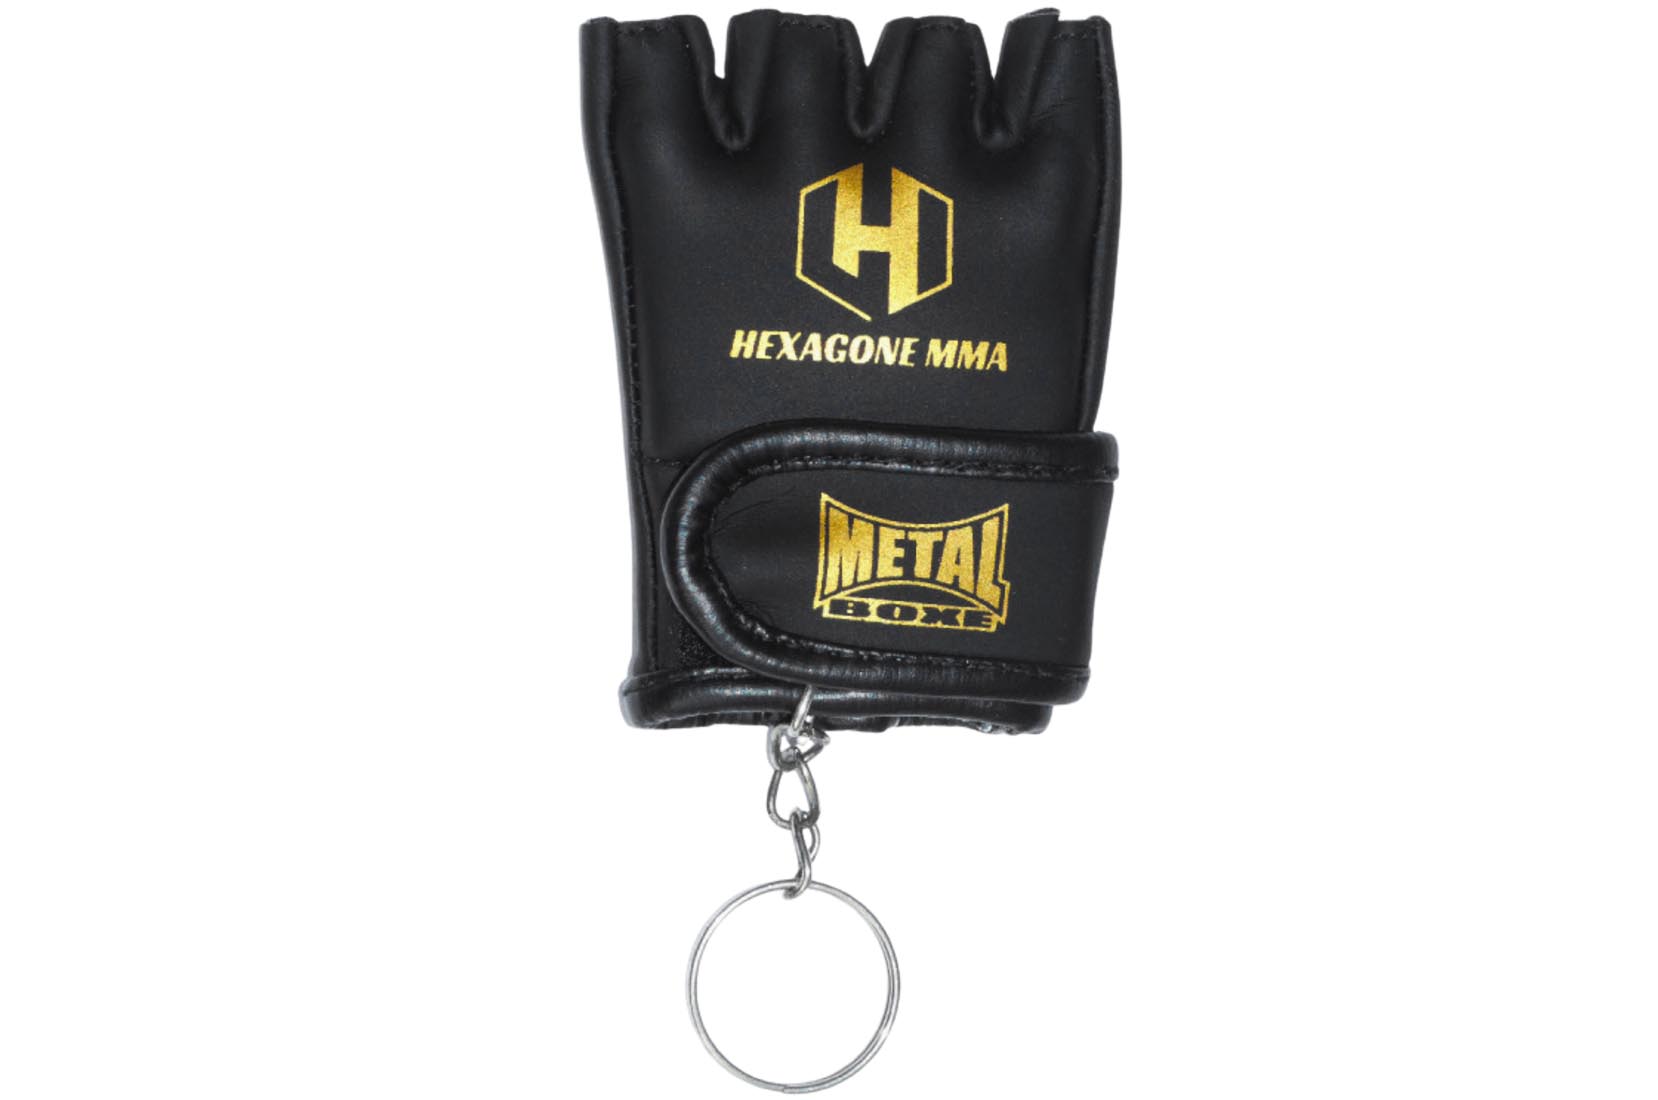 Guantes MMA, Concurso y entrenamiento - MB534M, Metal Boxe 